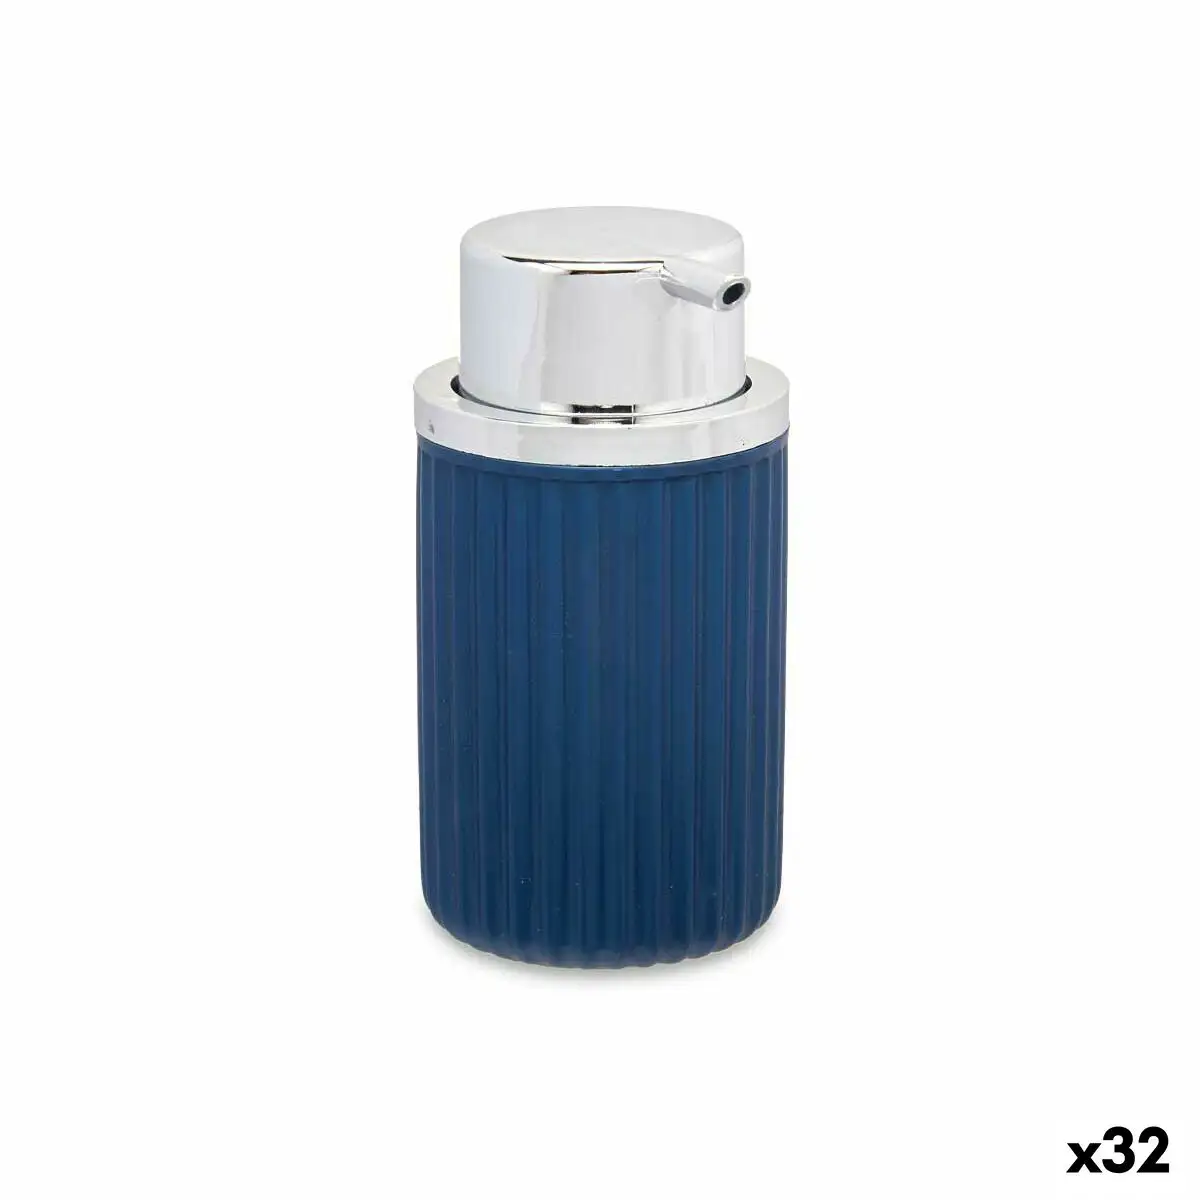 Distributeur de savon bleu plastique 32 unites 420 ml _1361. DIAYTAR SENEGAL - Votre Destination Shopping de Choix. Explorez notre boutique en ligne et découvrez des trésors qui reflètent votre style et votre passion pour l'authenticité.